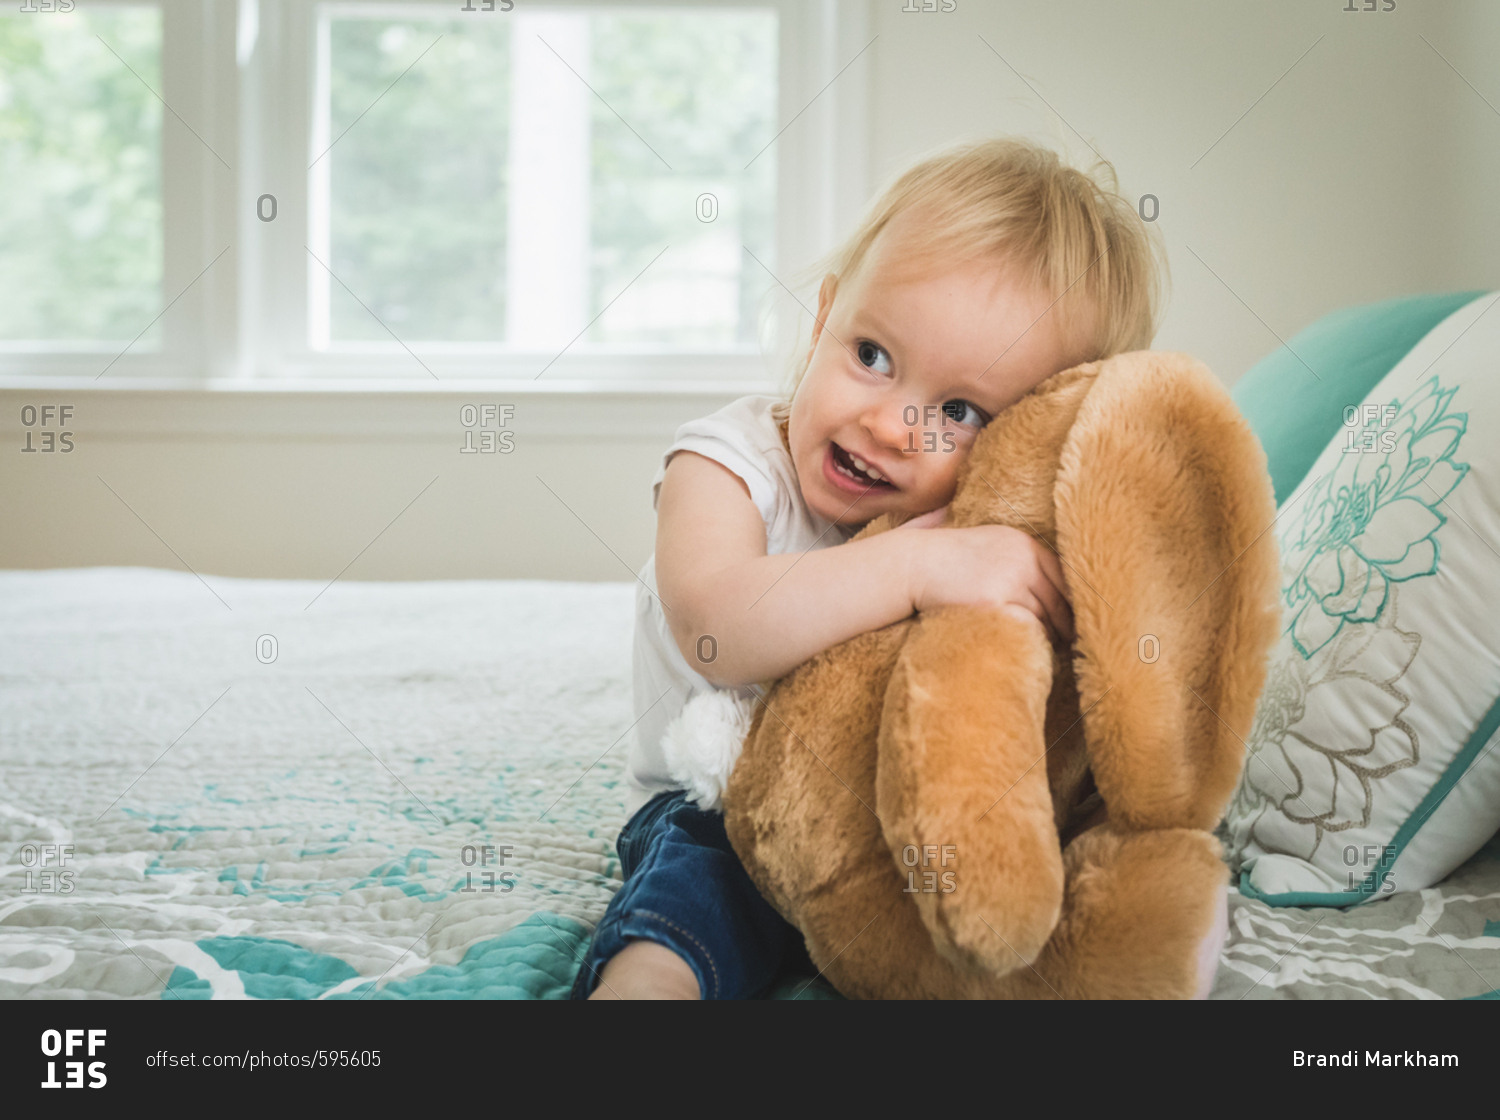 Baby girl hugging stuffed animal on bed